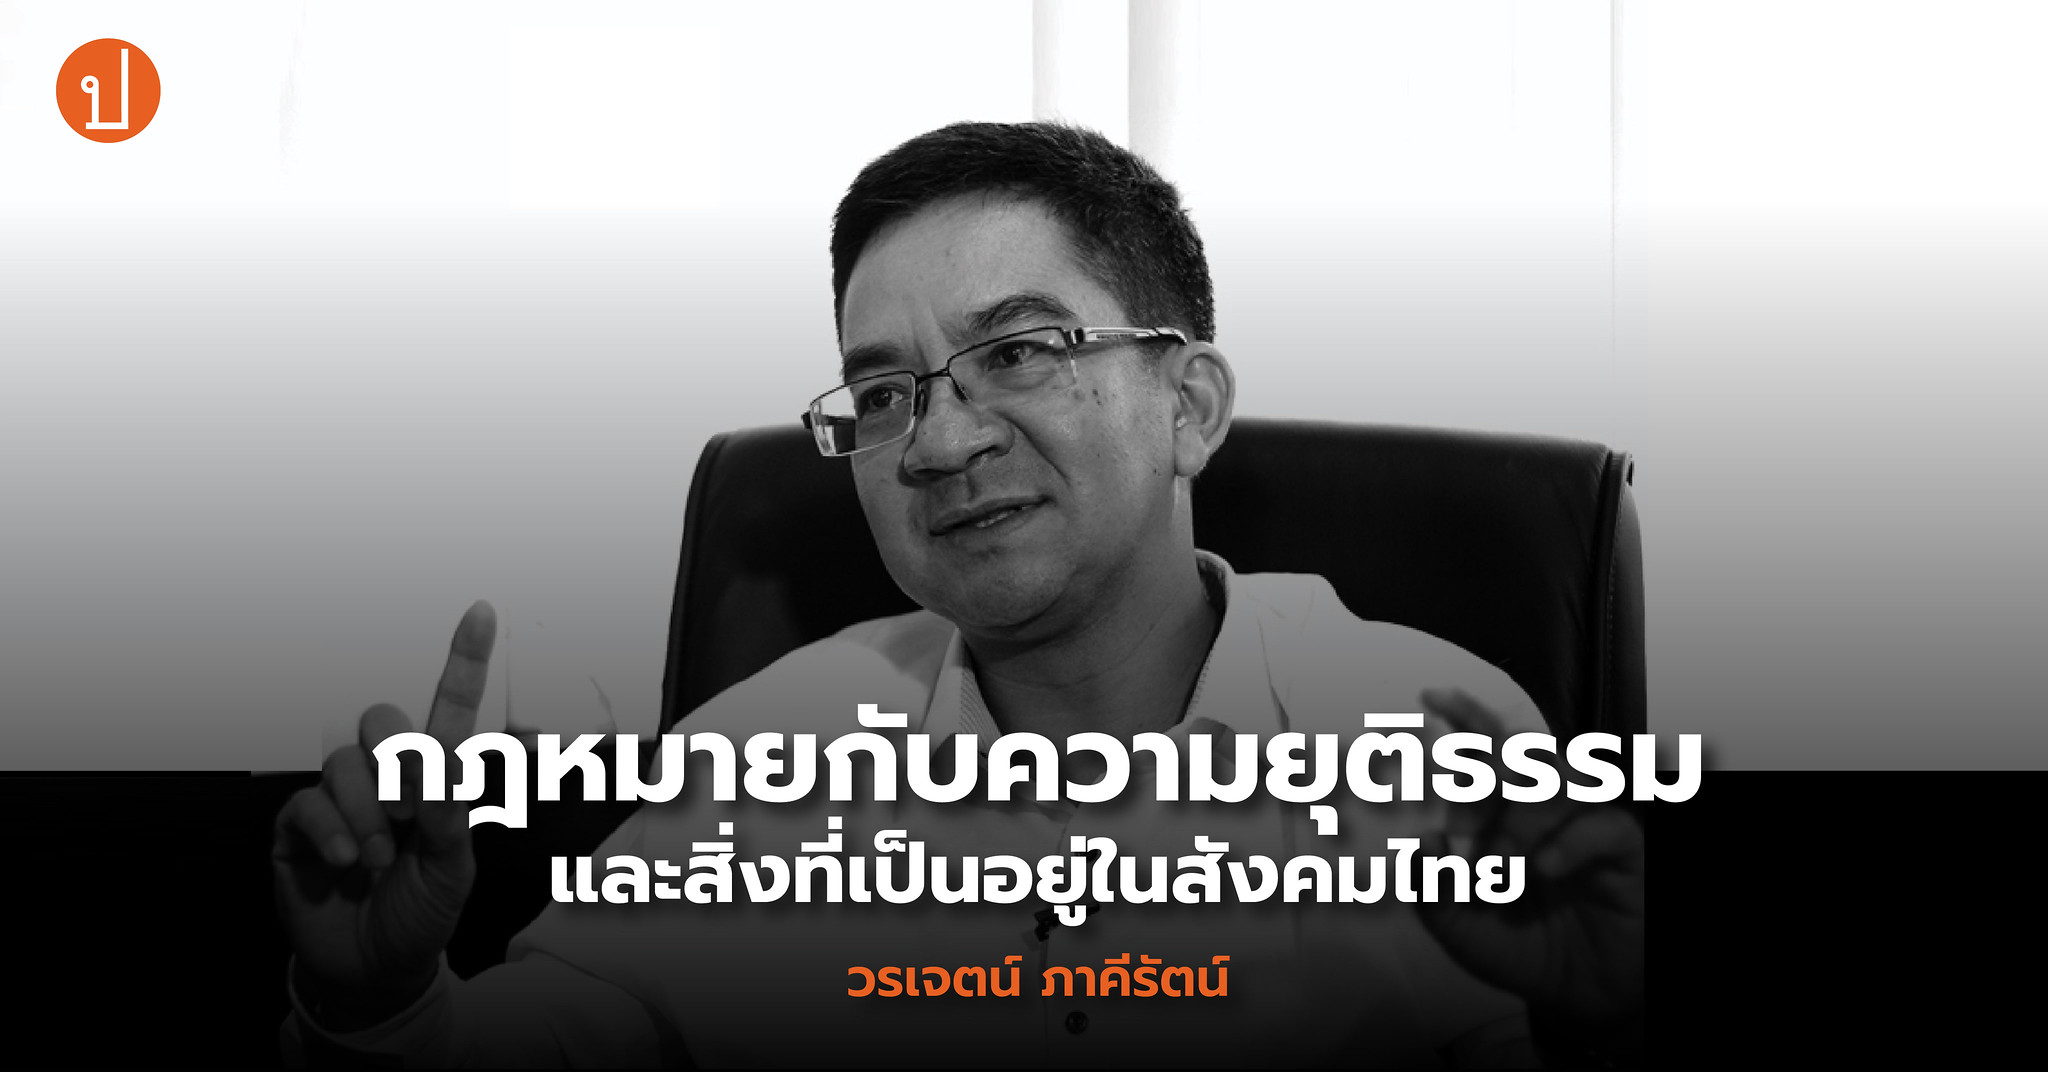 วรเจตน์ ภาคีรัตน์: กฎหมายกับความยุติธรรมและสิ่งที่เป็นอยู่ในสังคมไทย